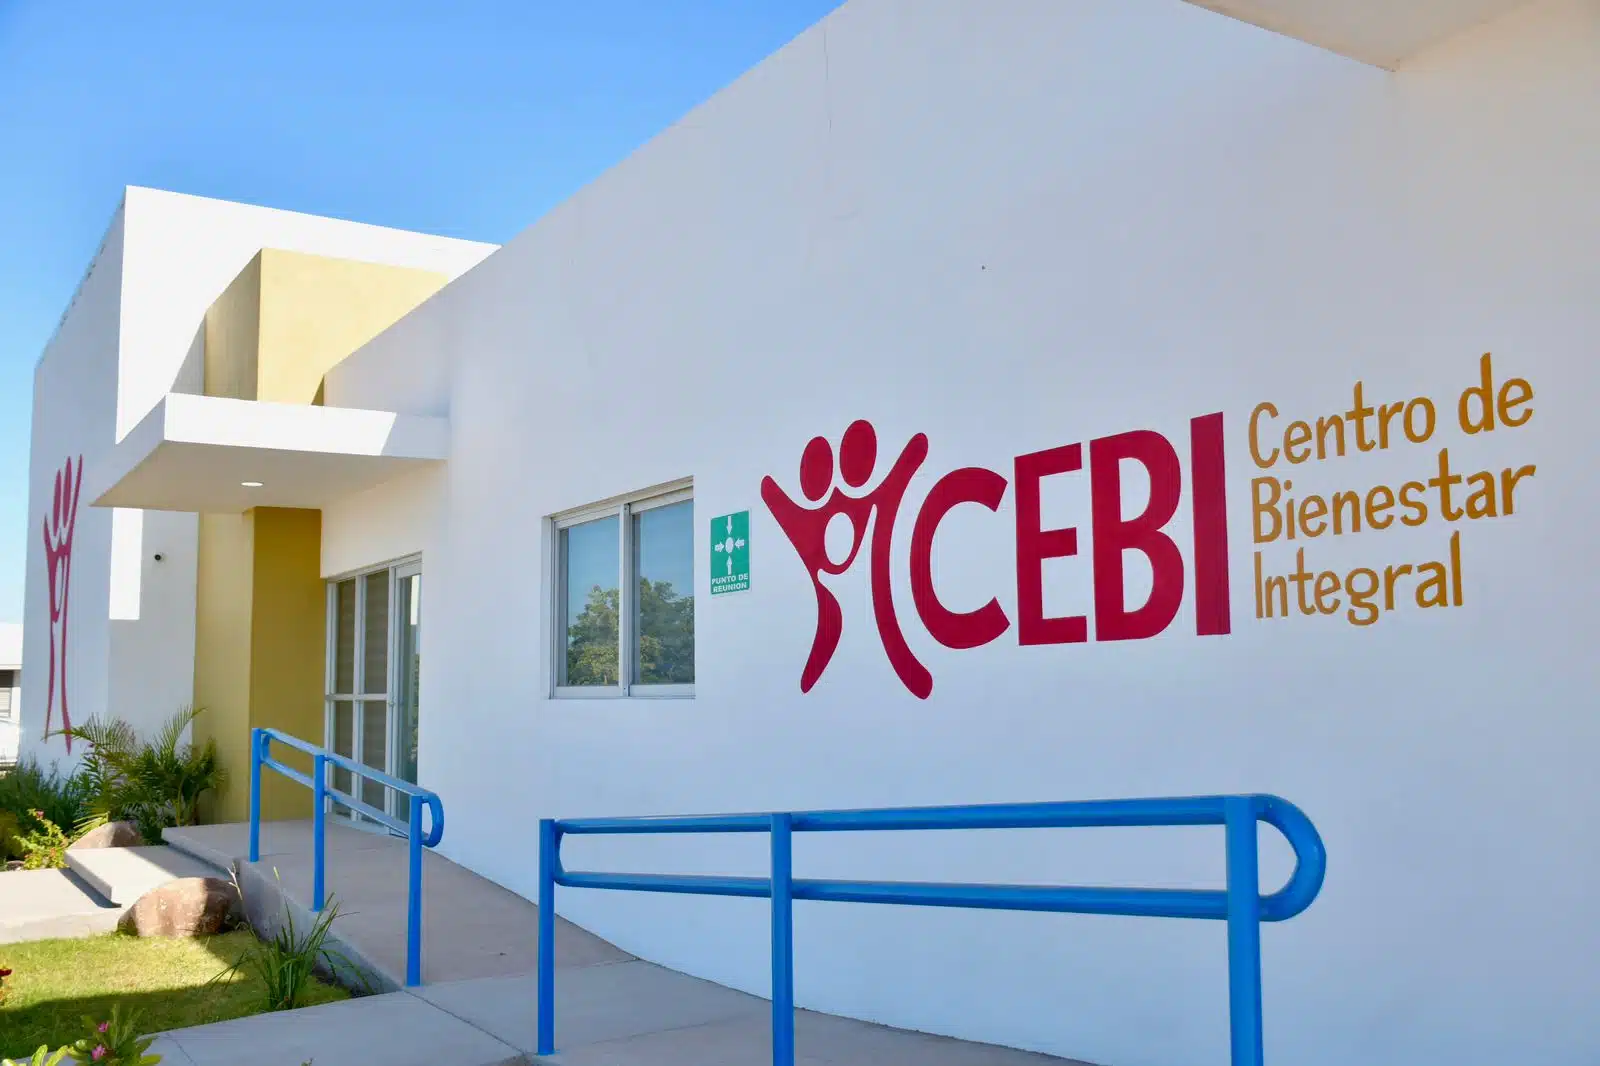 CEBI Centro de Bienestar Integral